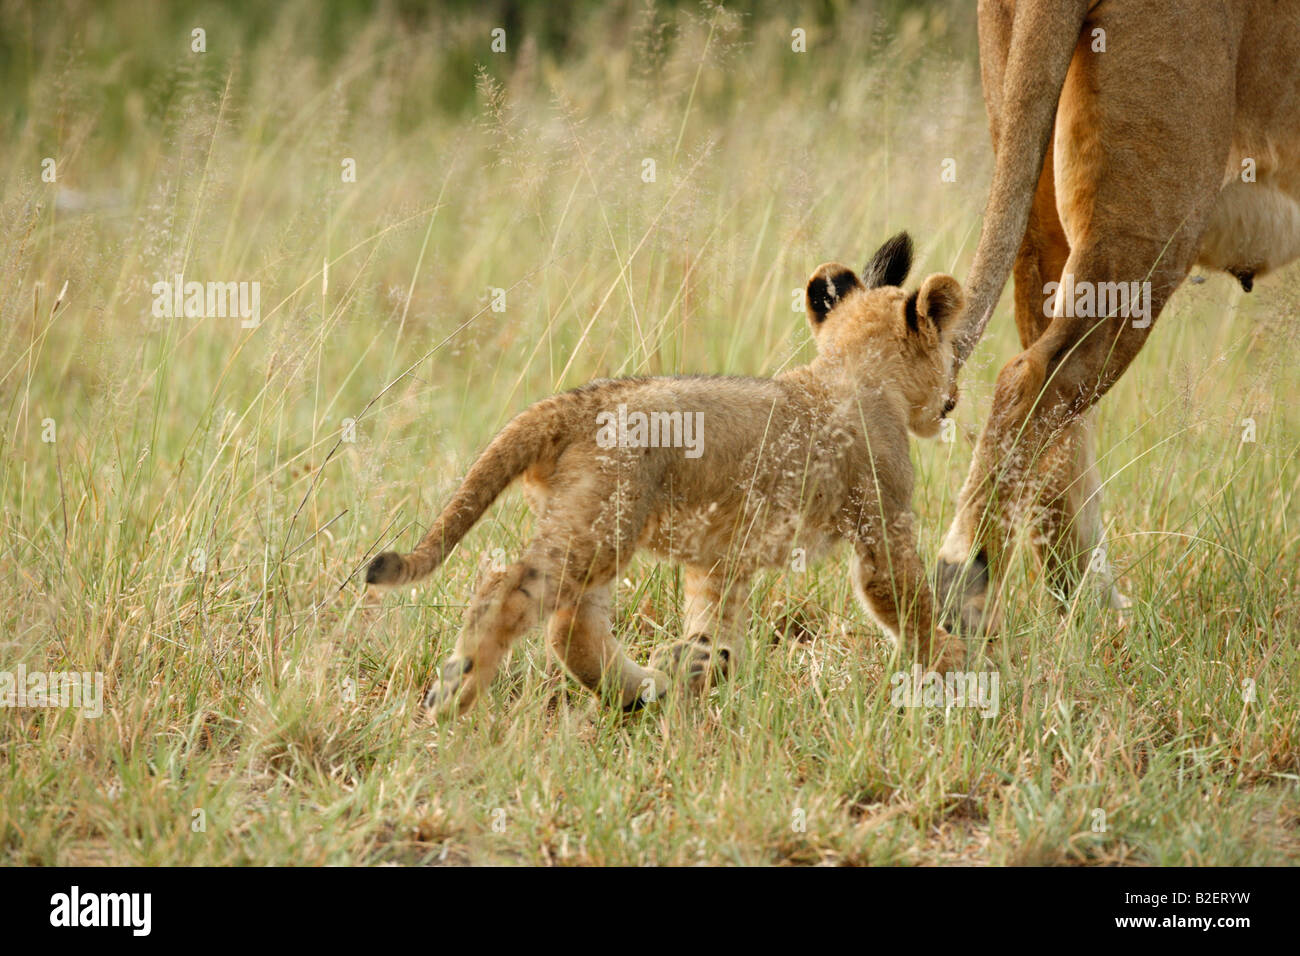 Un jeune lion cub suivant sa mère allaitante Banque D'Images